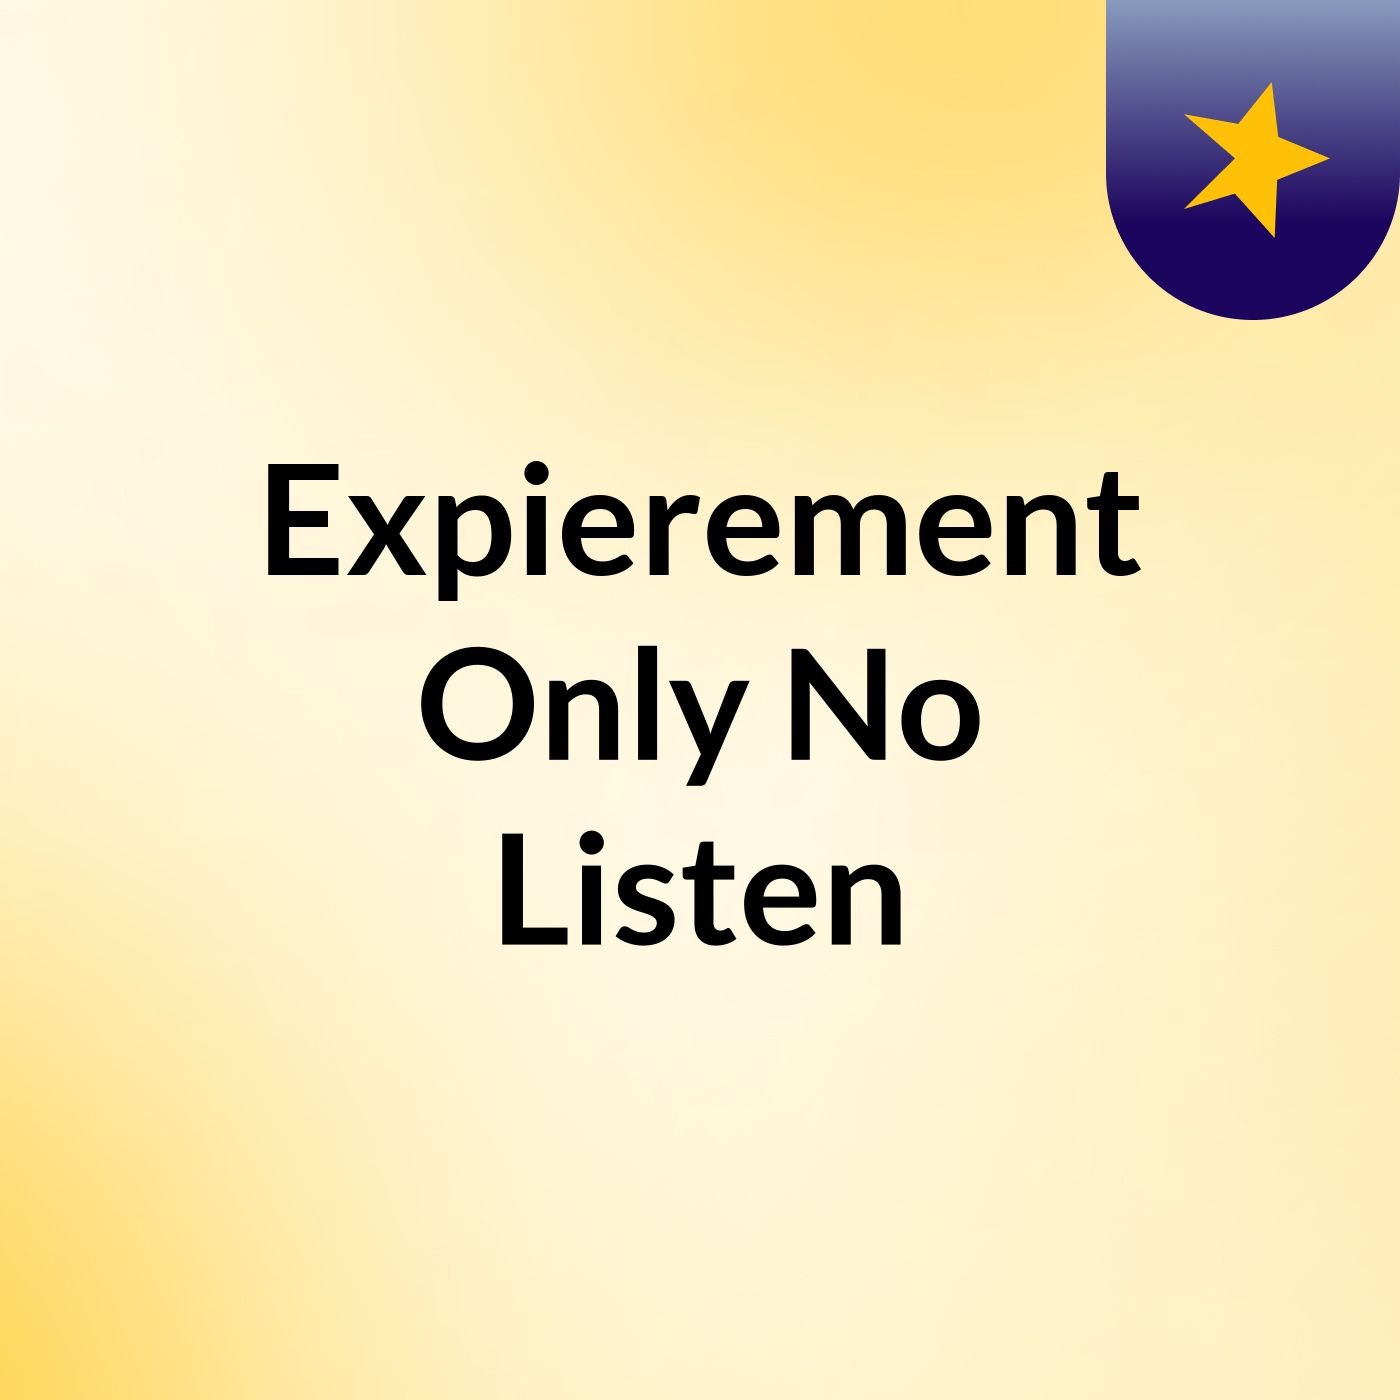 Expierement Only No Listen